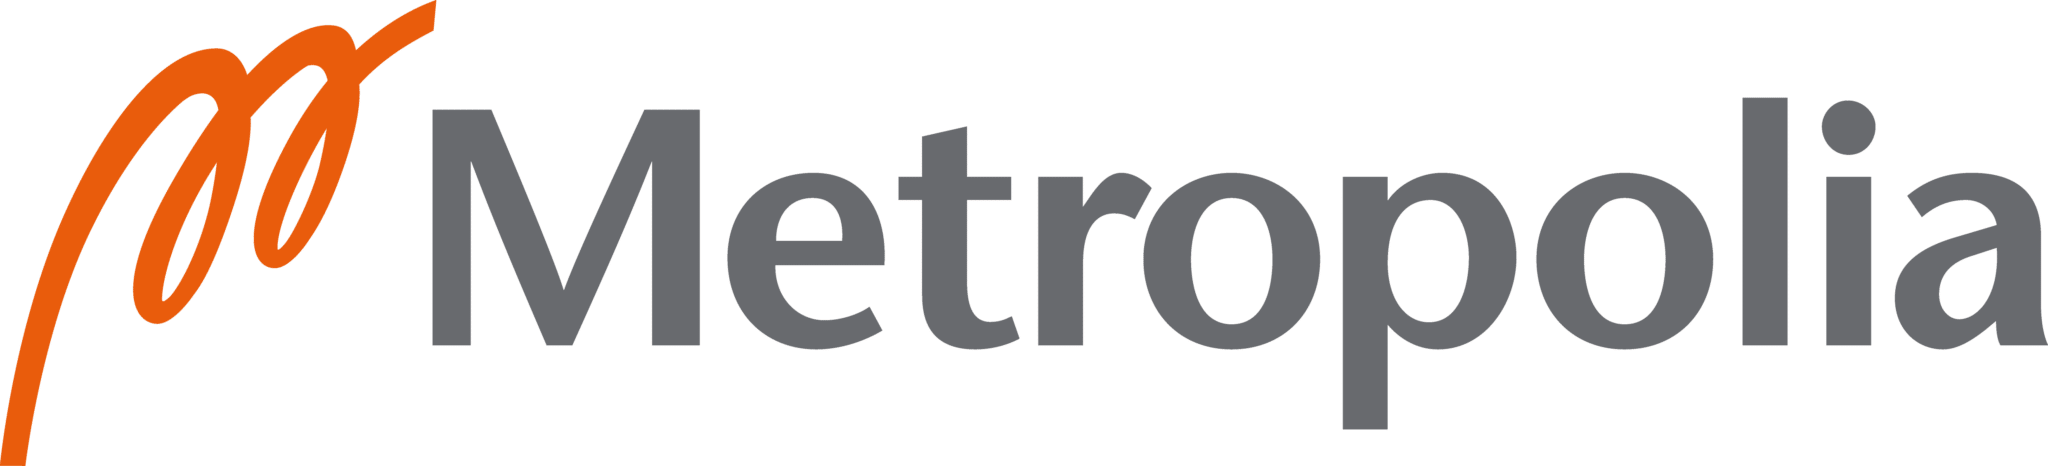 Metropolia ammattikorkeakoulun logo.